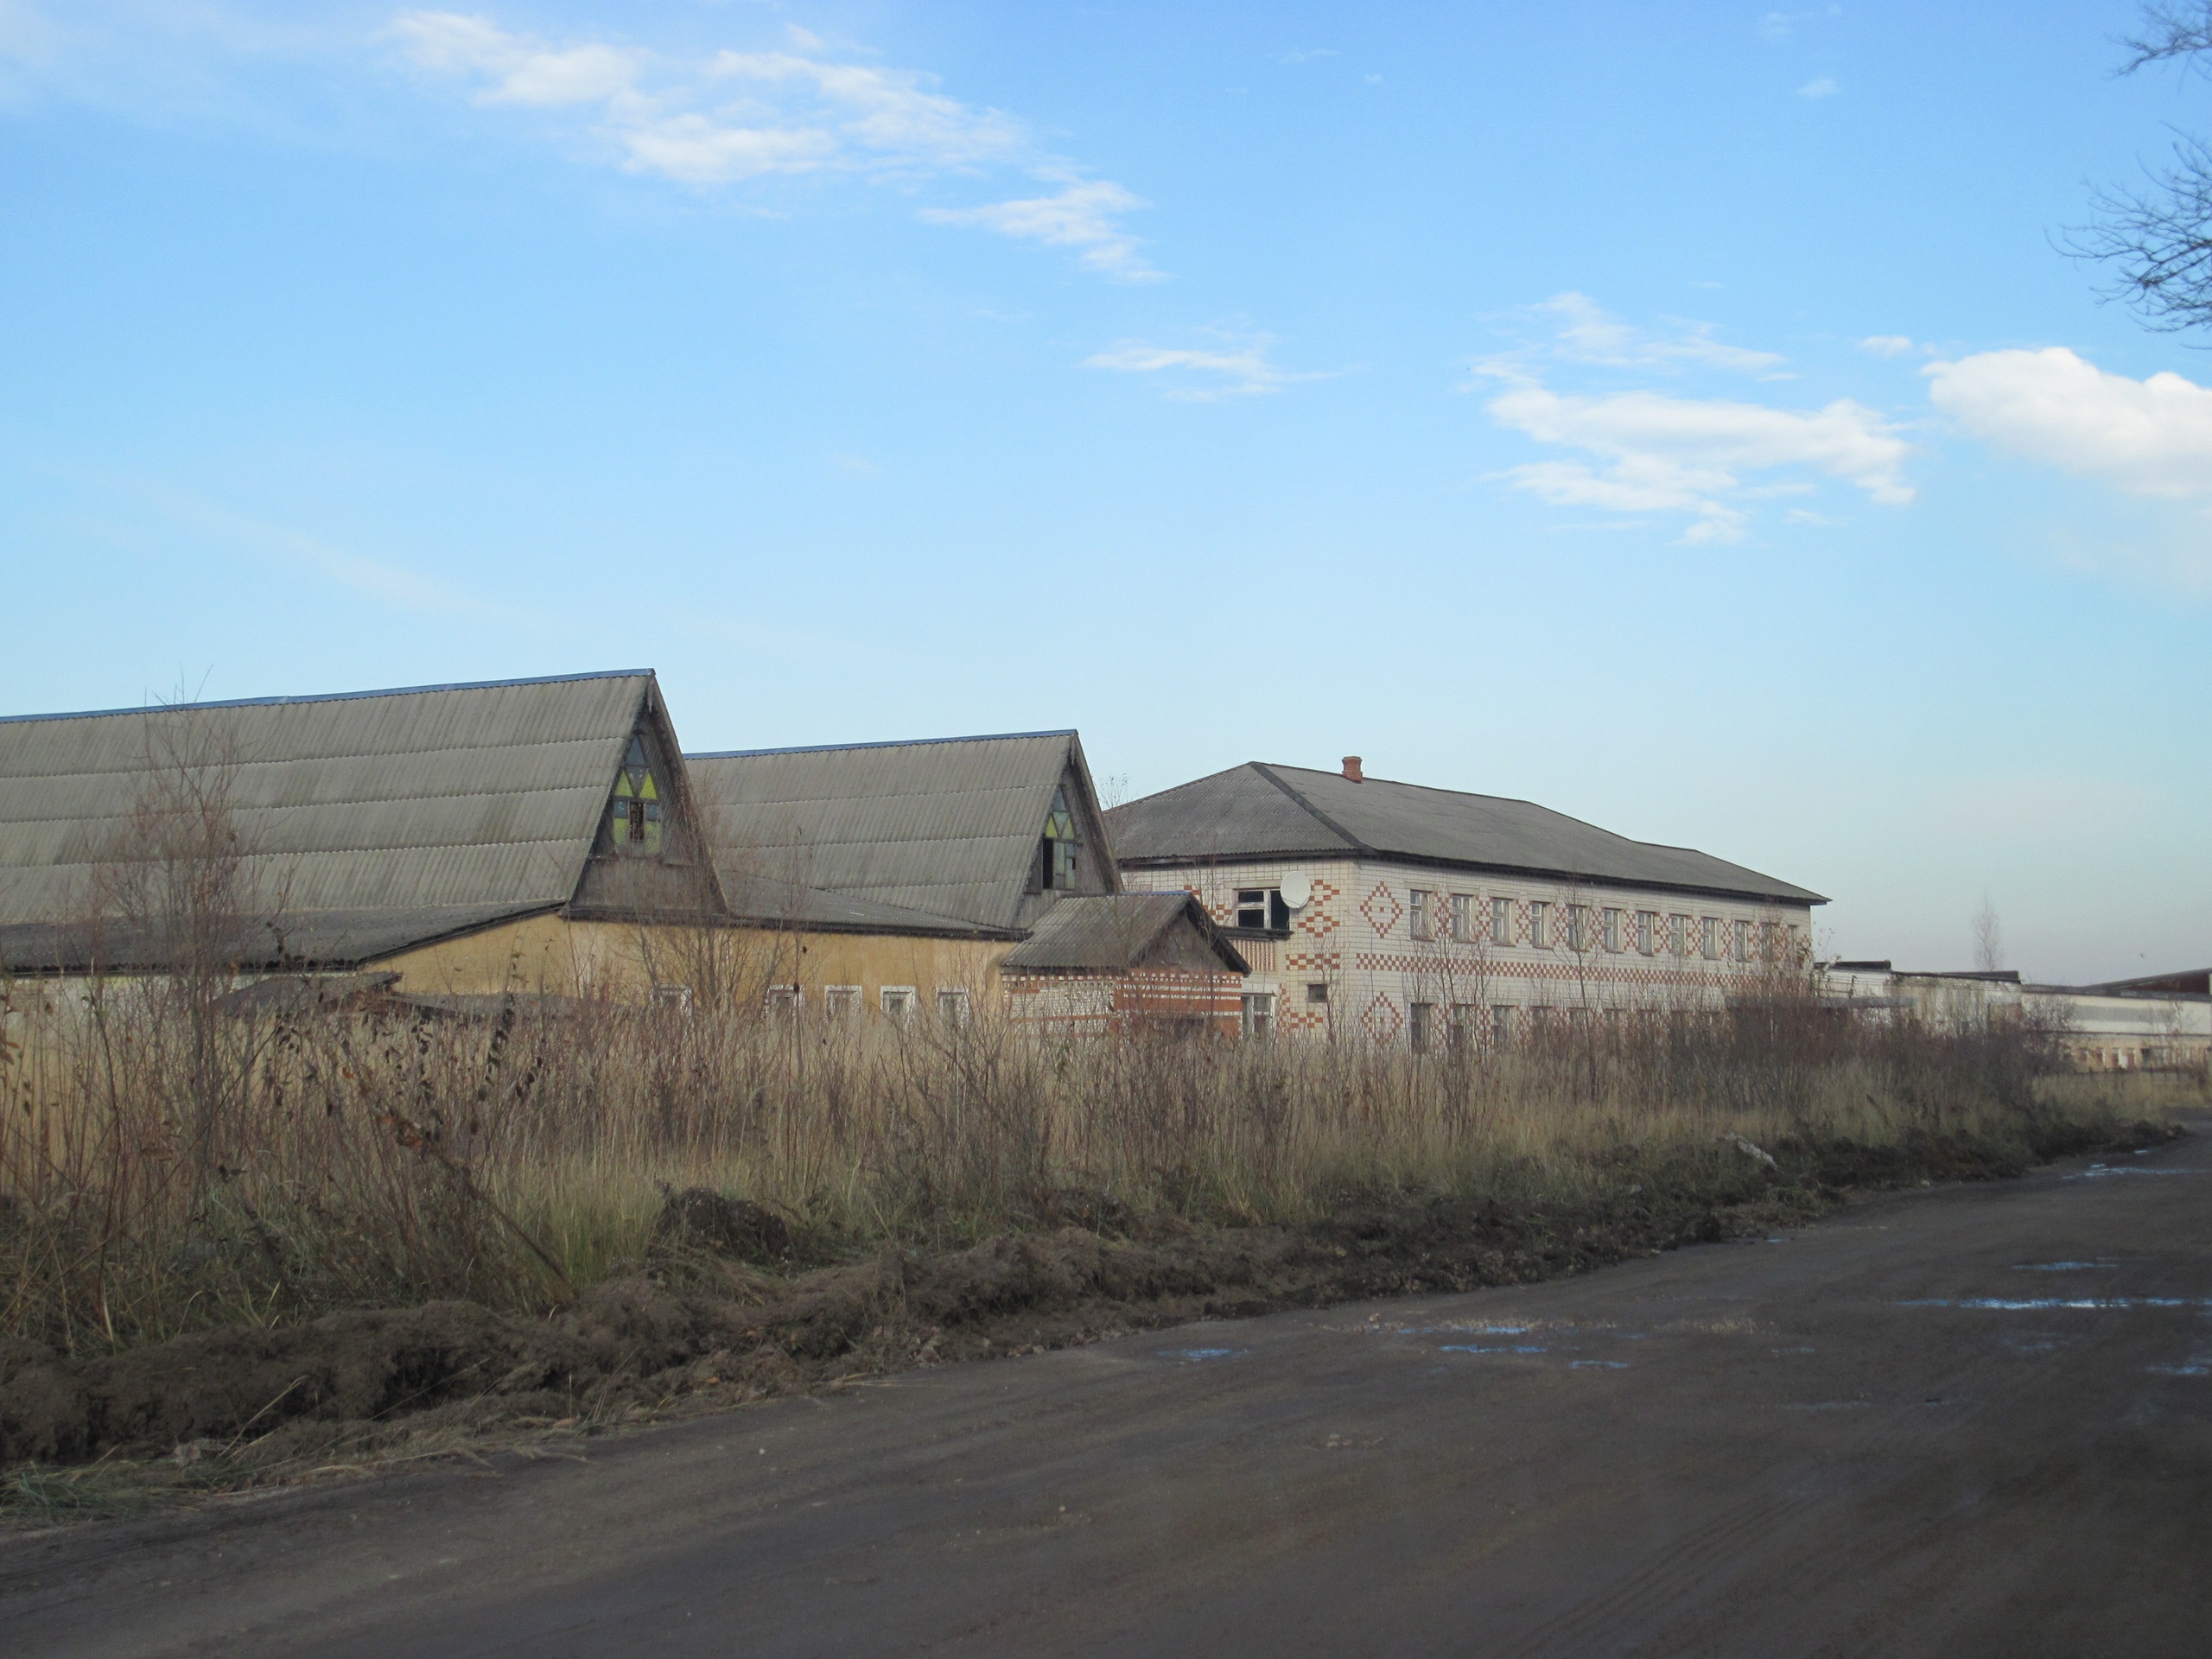 Фотограф Игорь Федотов побывал на заброшенной птицефабрике в Вязниках. Здания пустуют уже около 20 лет и медленно разрушаются